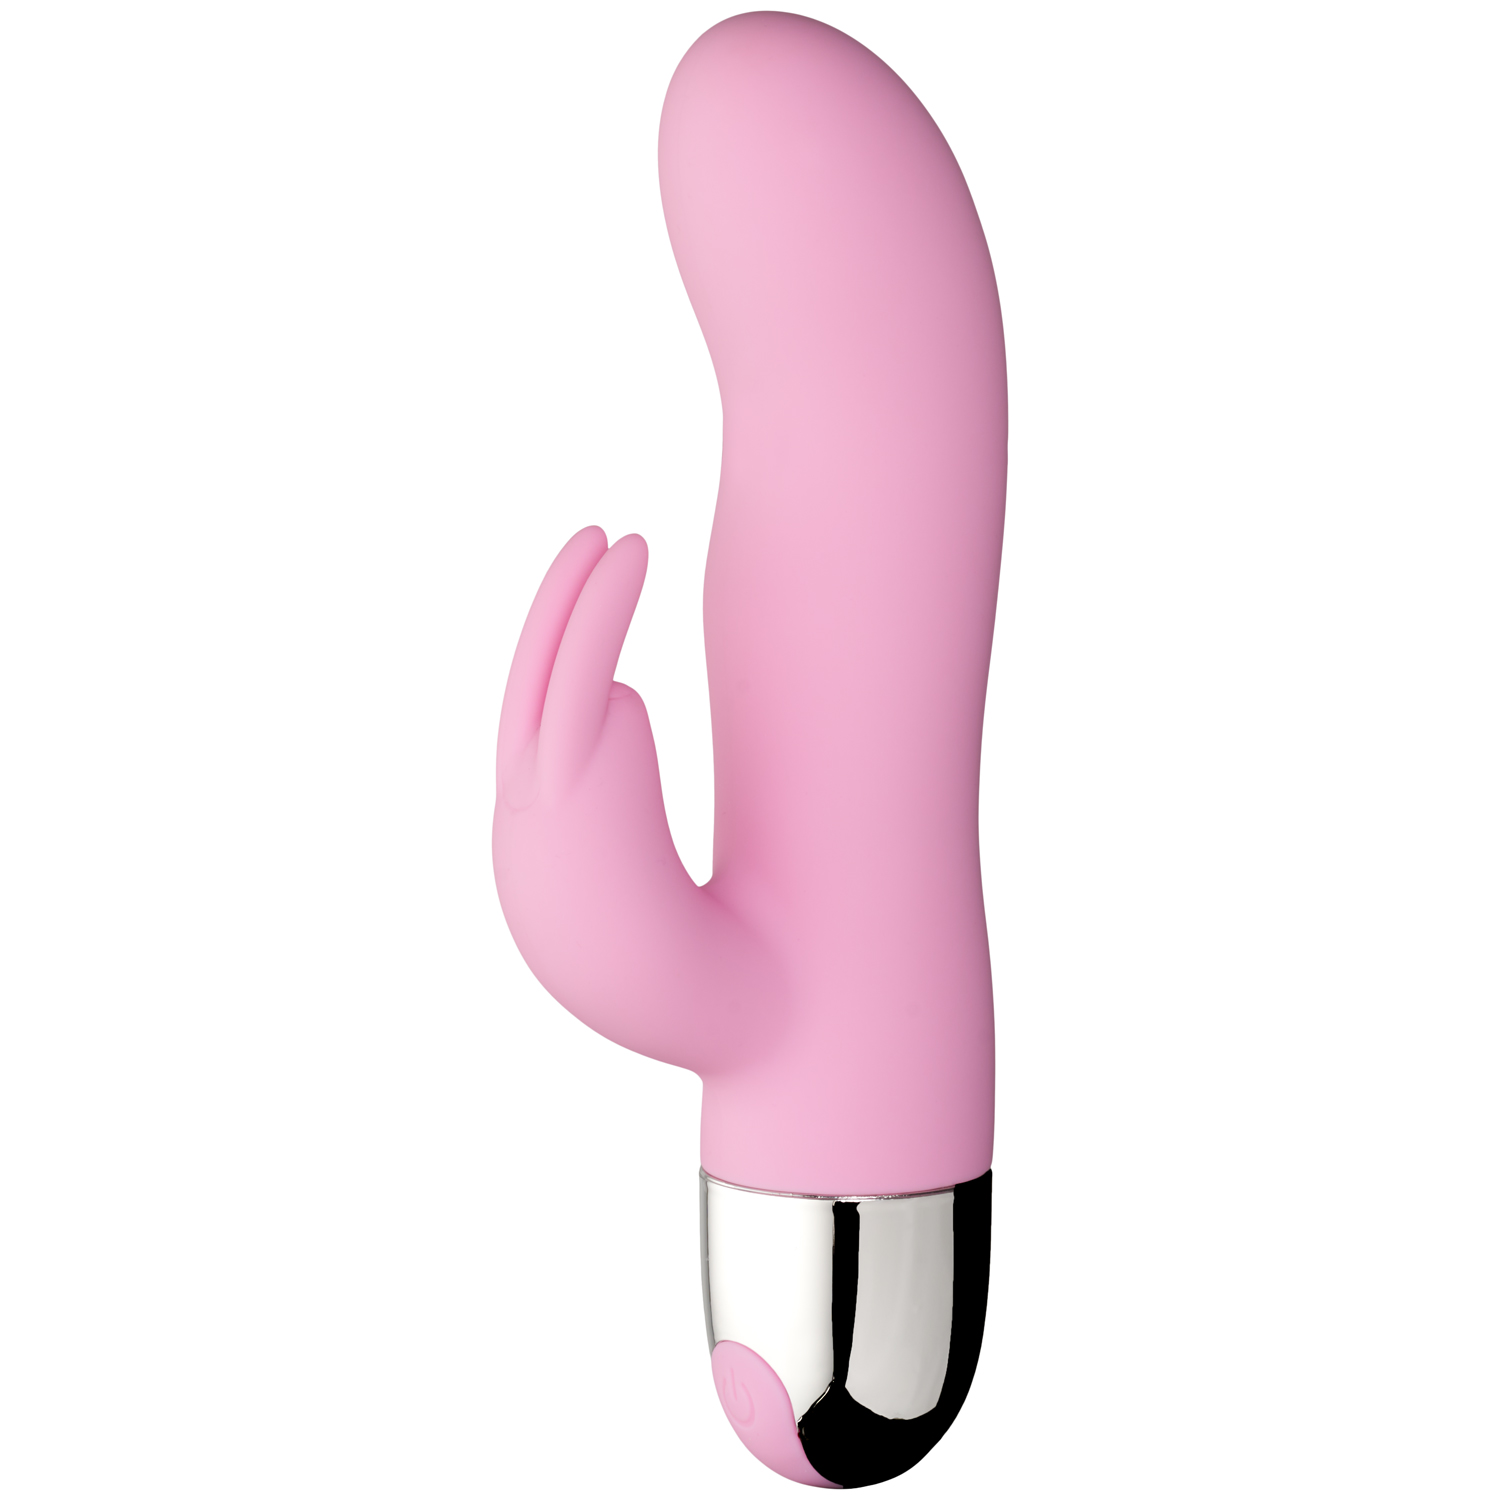 Sinful Playful Pink Bunny G Uppladdningsbar Rabbitvibrator - Ljusrosa | Vibratorer//Favoriter//REA för kvinnor//Kvinnor//G-punktsvibrator//Vattentät Vibrator//Laddningsbar Vibrator//Rabbitvibrator//Sinful//Klitorisvibrator//Dubbel Vibrator//Sinful Vibratorer//Färgglada Vibratorer//Rosa Vibratorer | Intimast